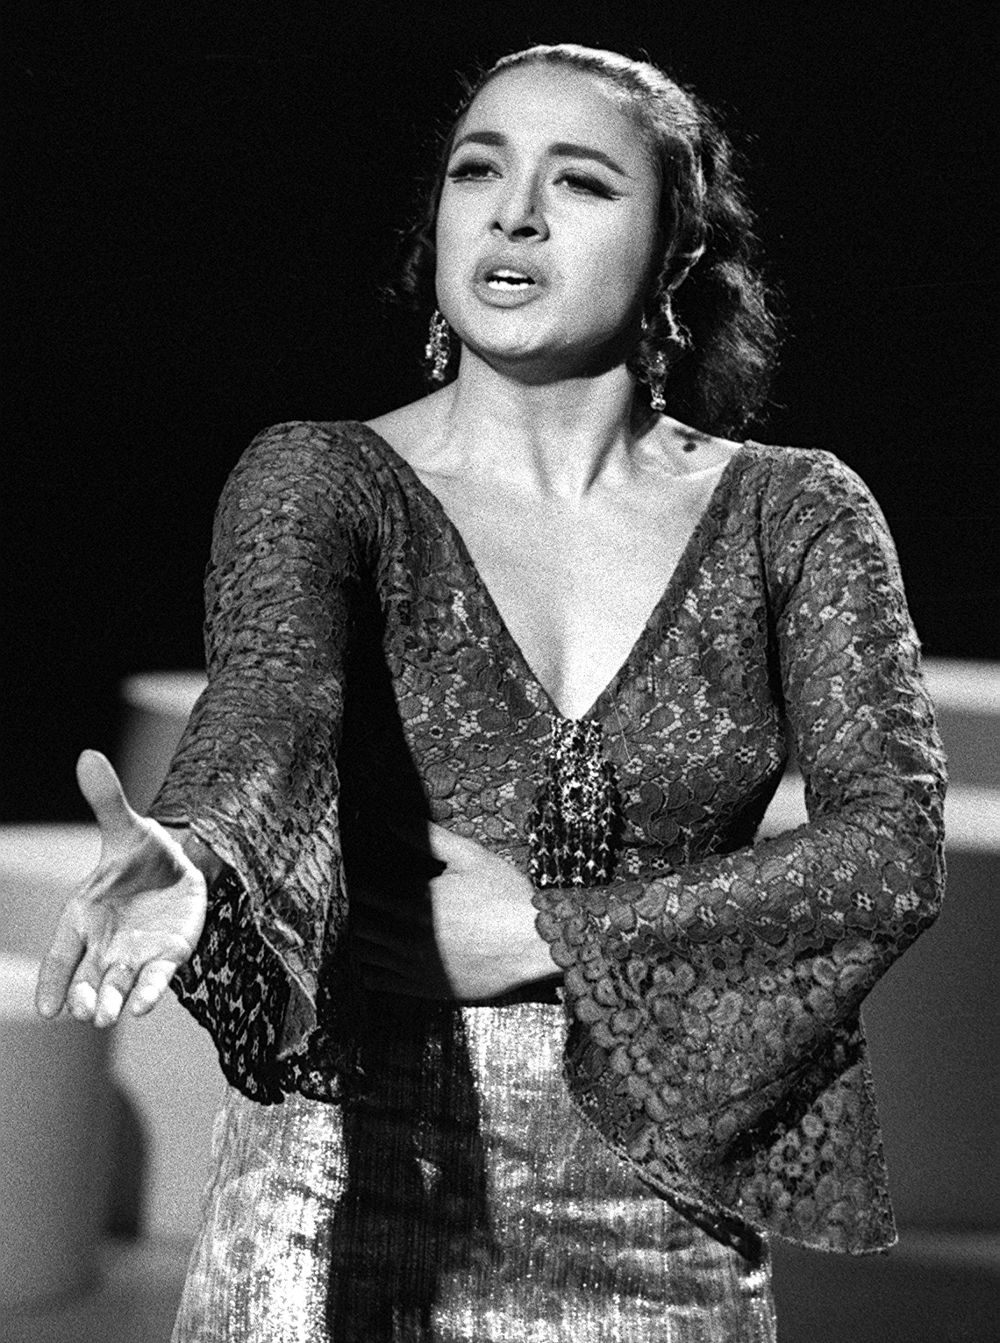 Fotografía tomada el 6 de marzo de 1969 de la cantante.